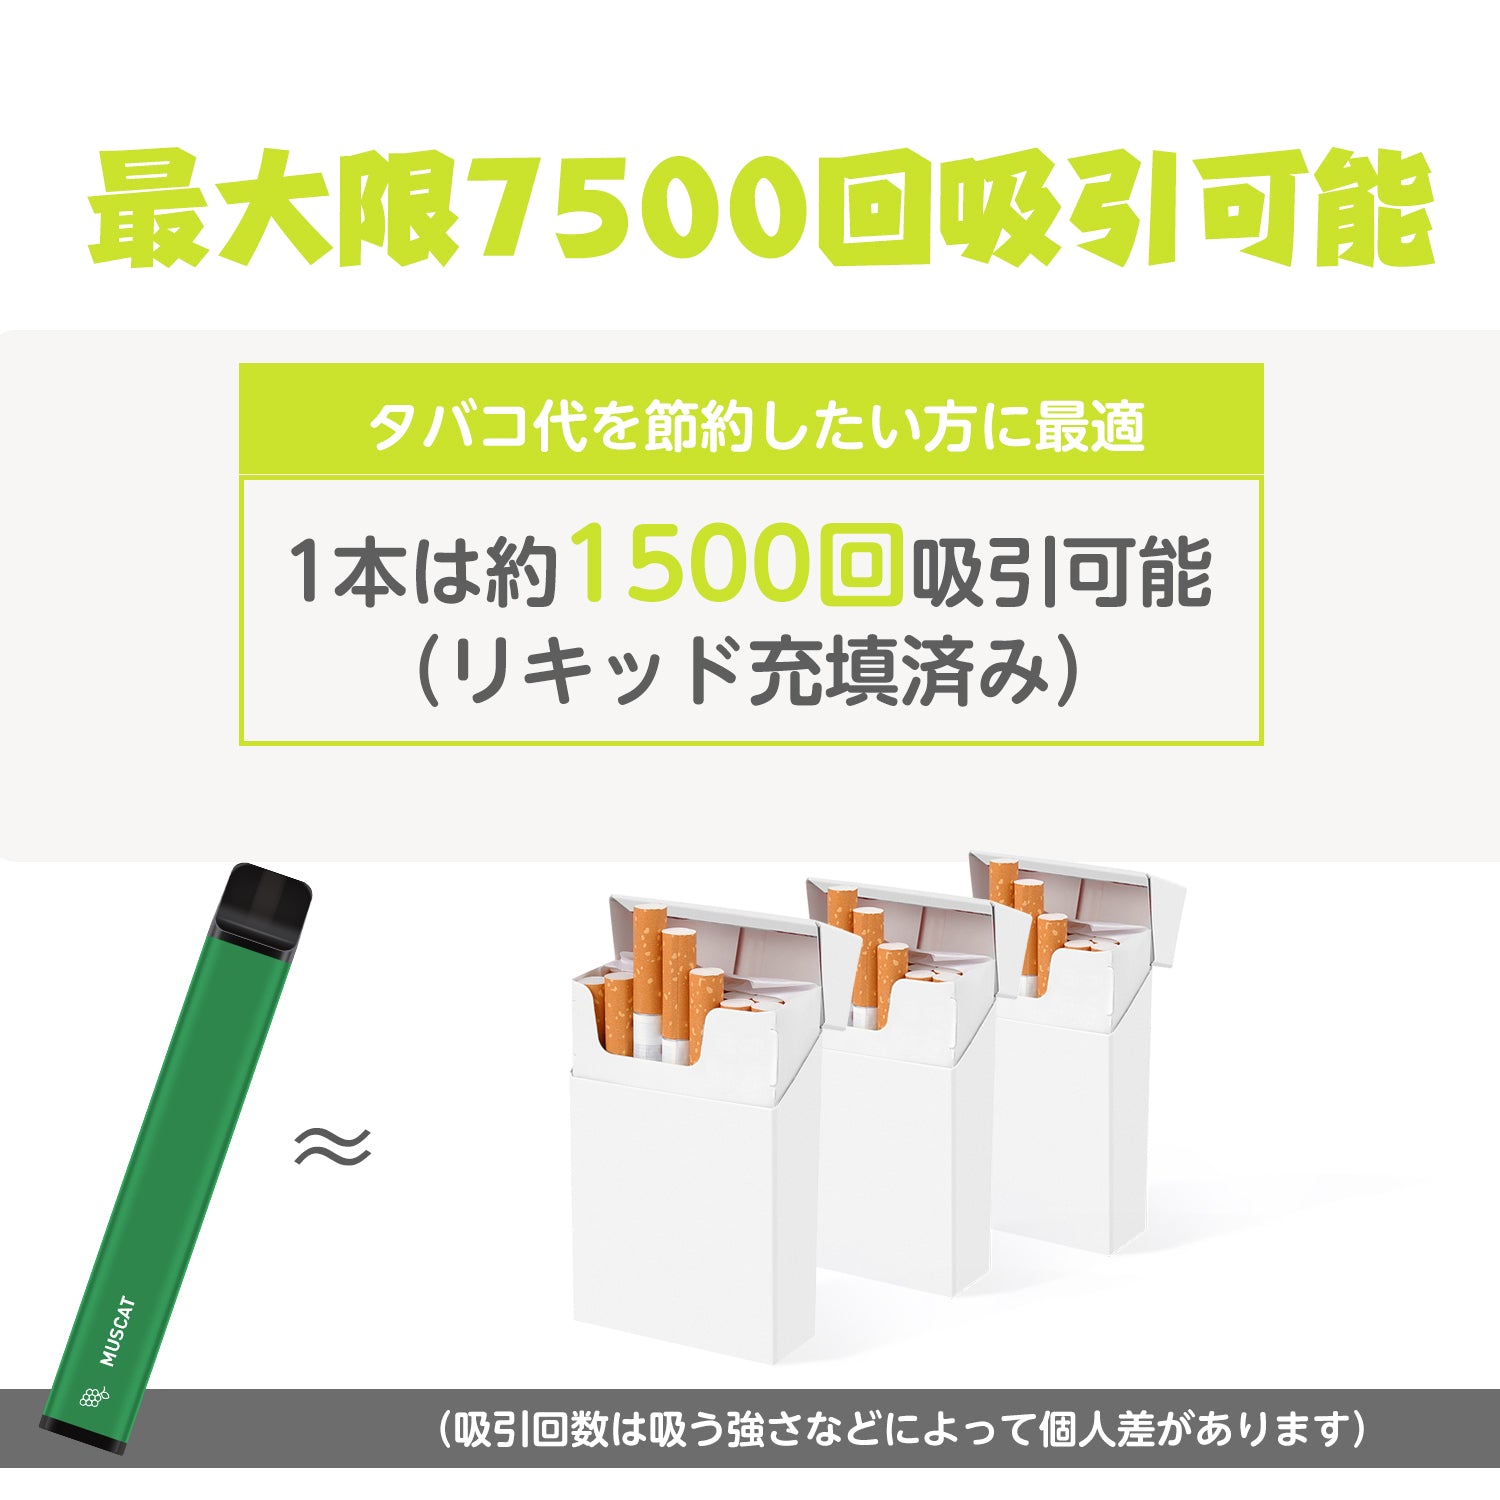 NICOCO 電子タバコ 使い捨て 5本セット (マスカット)